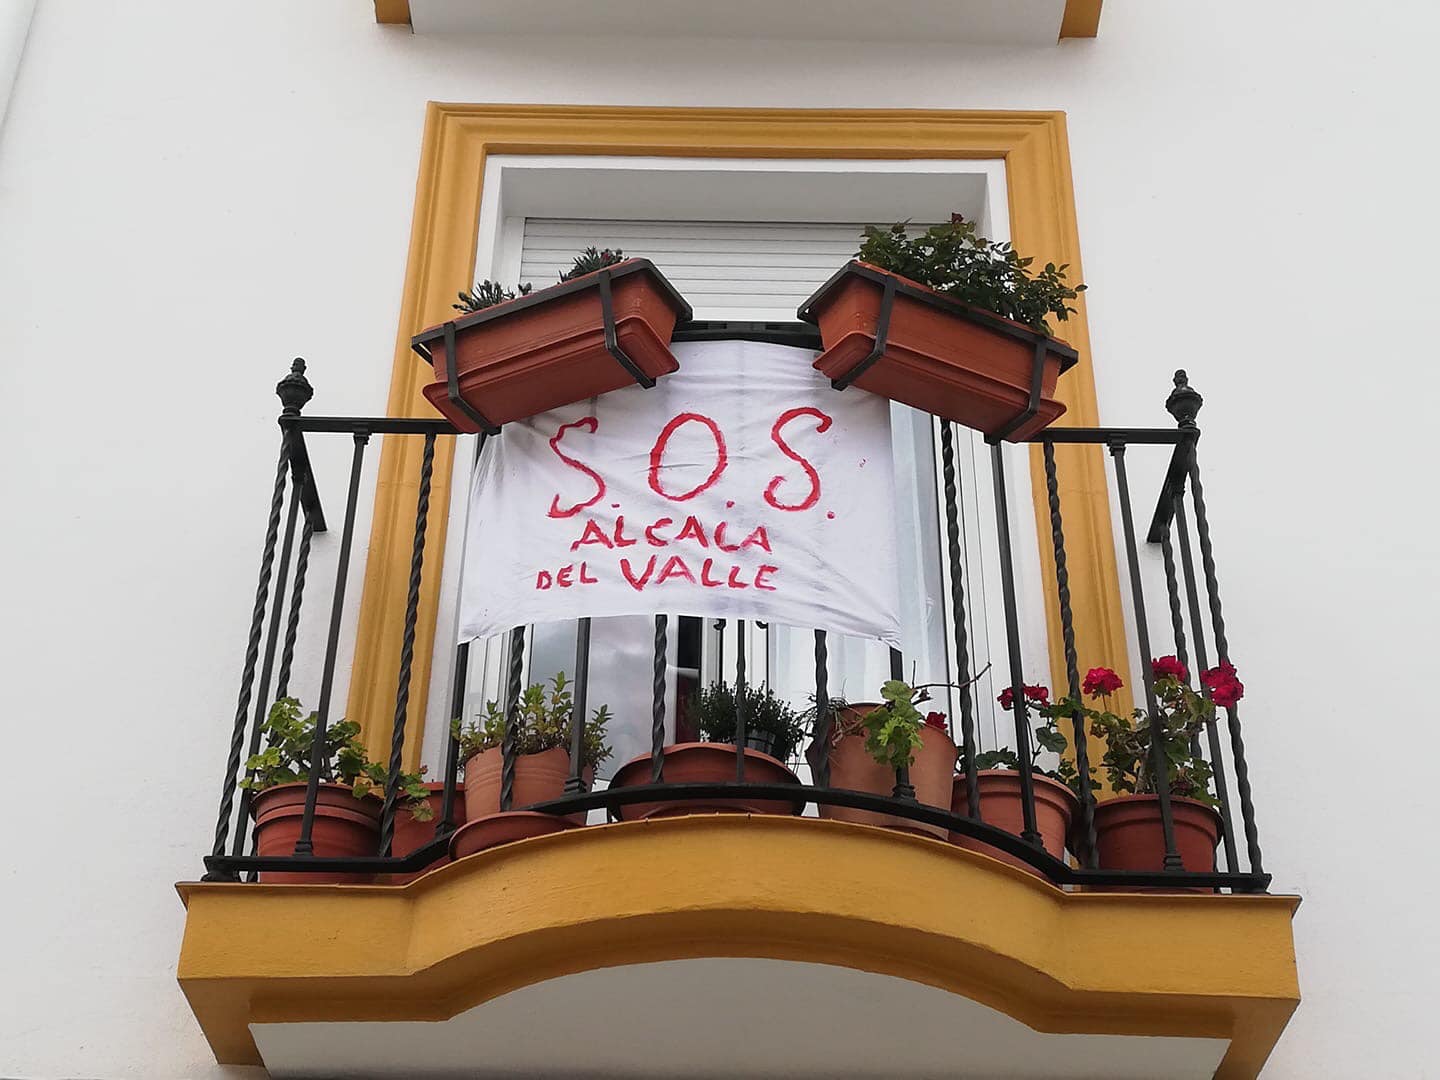 Una pancarta, en una vivienda de Alcalá del Valle, donde los hosteleros deciden cerrar sus negocios temporalmente.